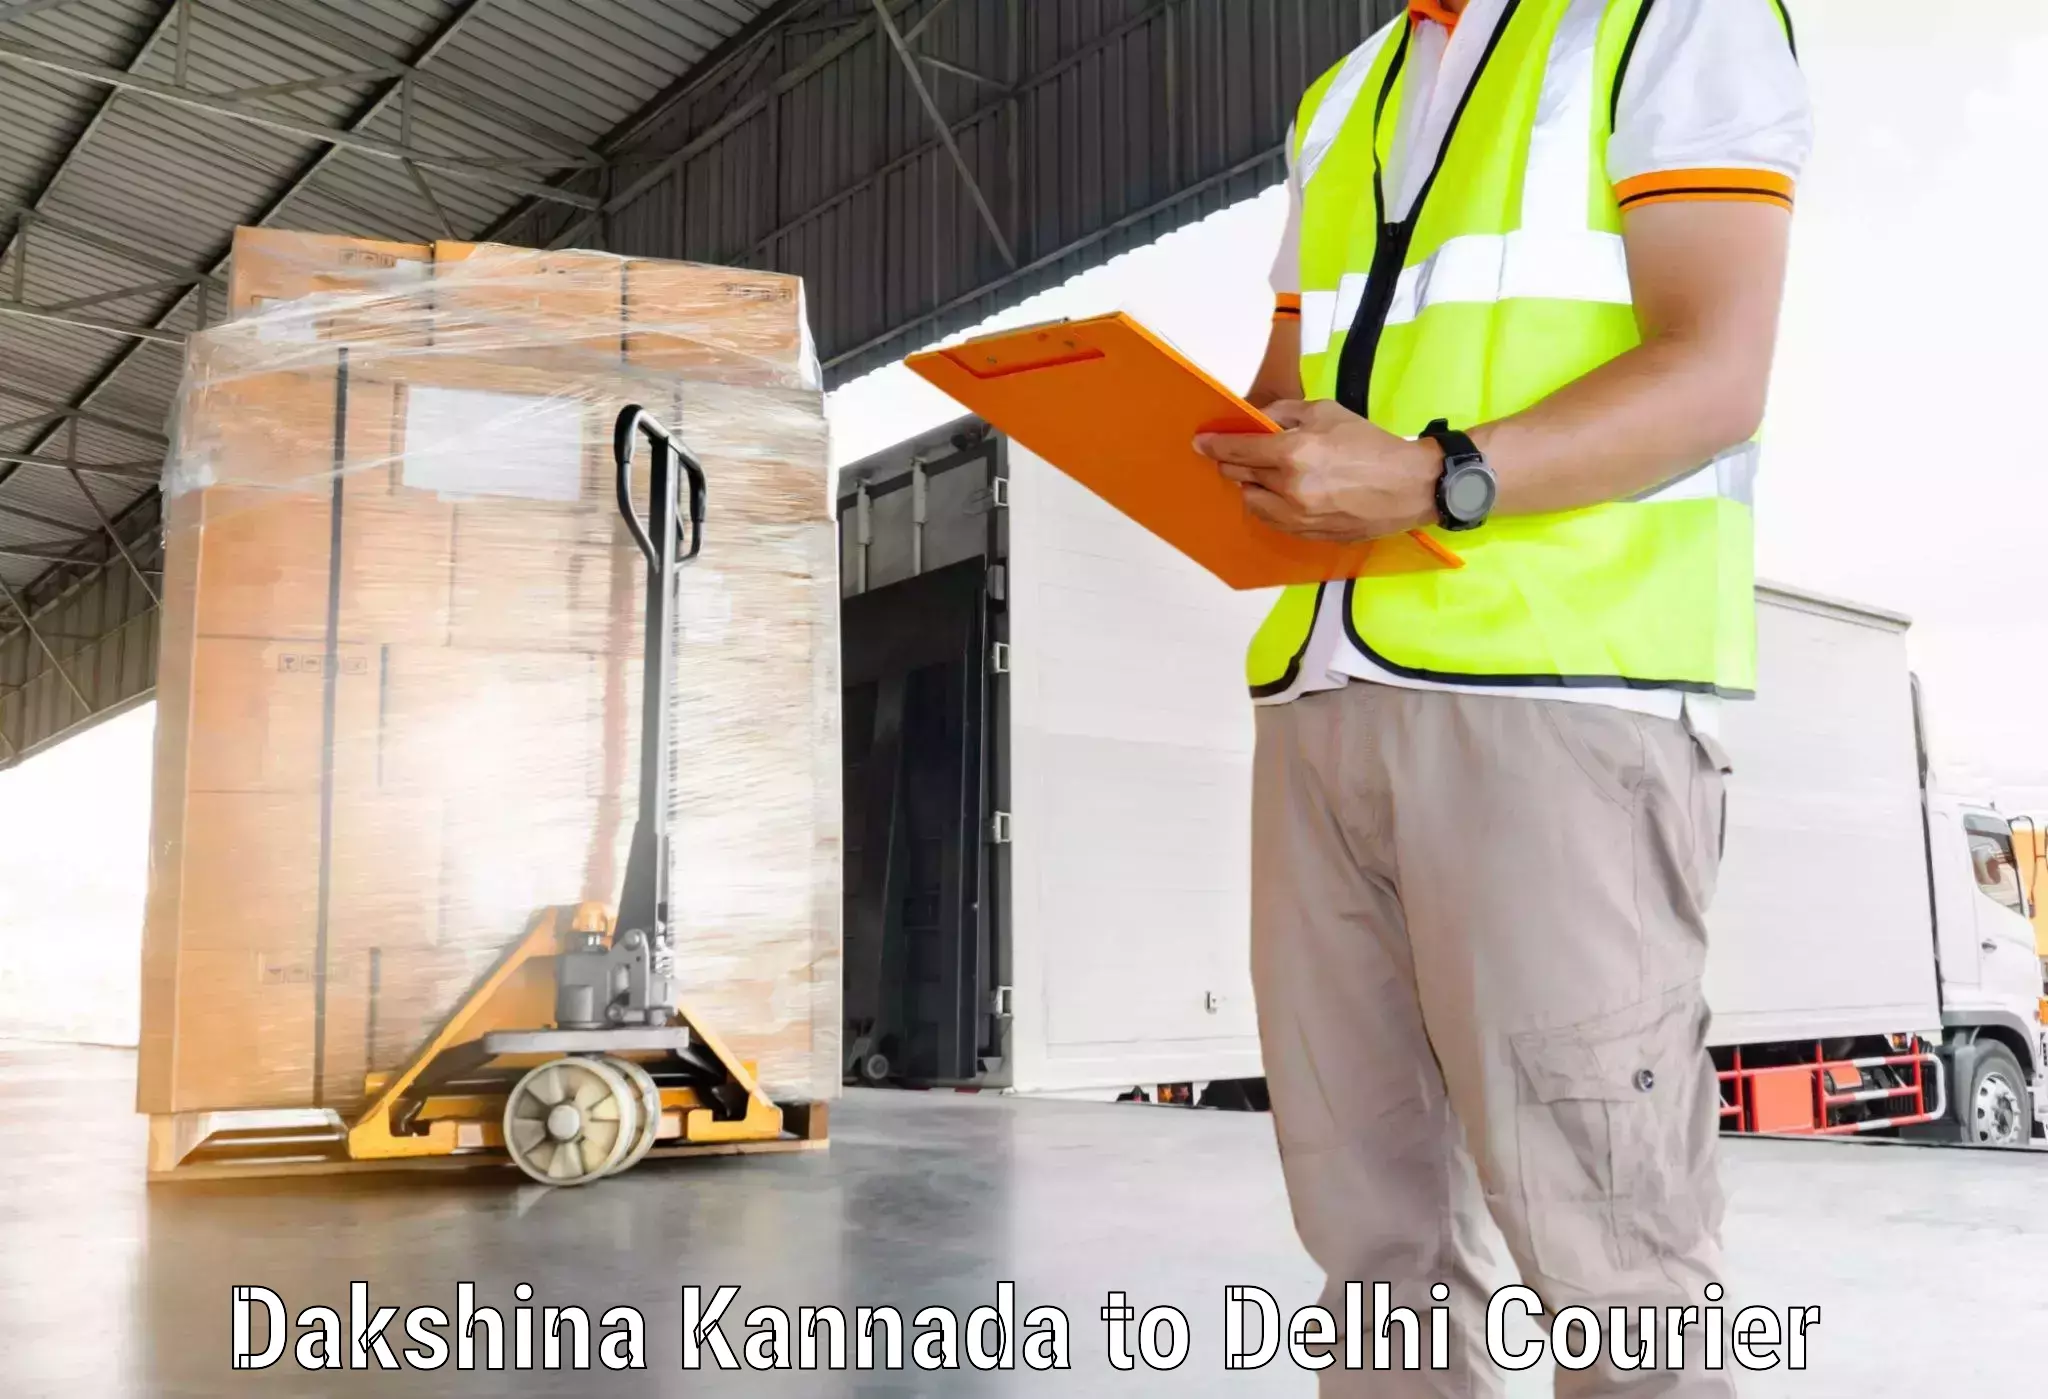 Customer-focused courier Dakshina Kannada to East Delhi